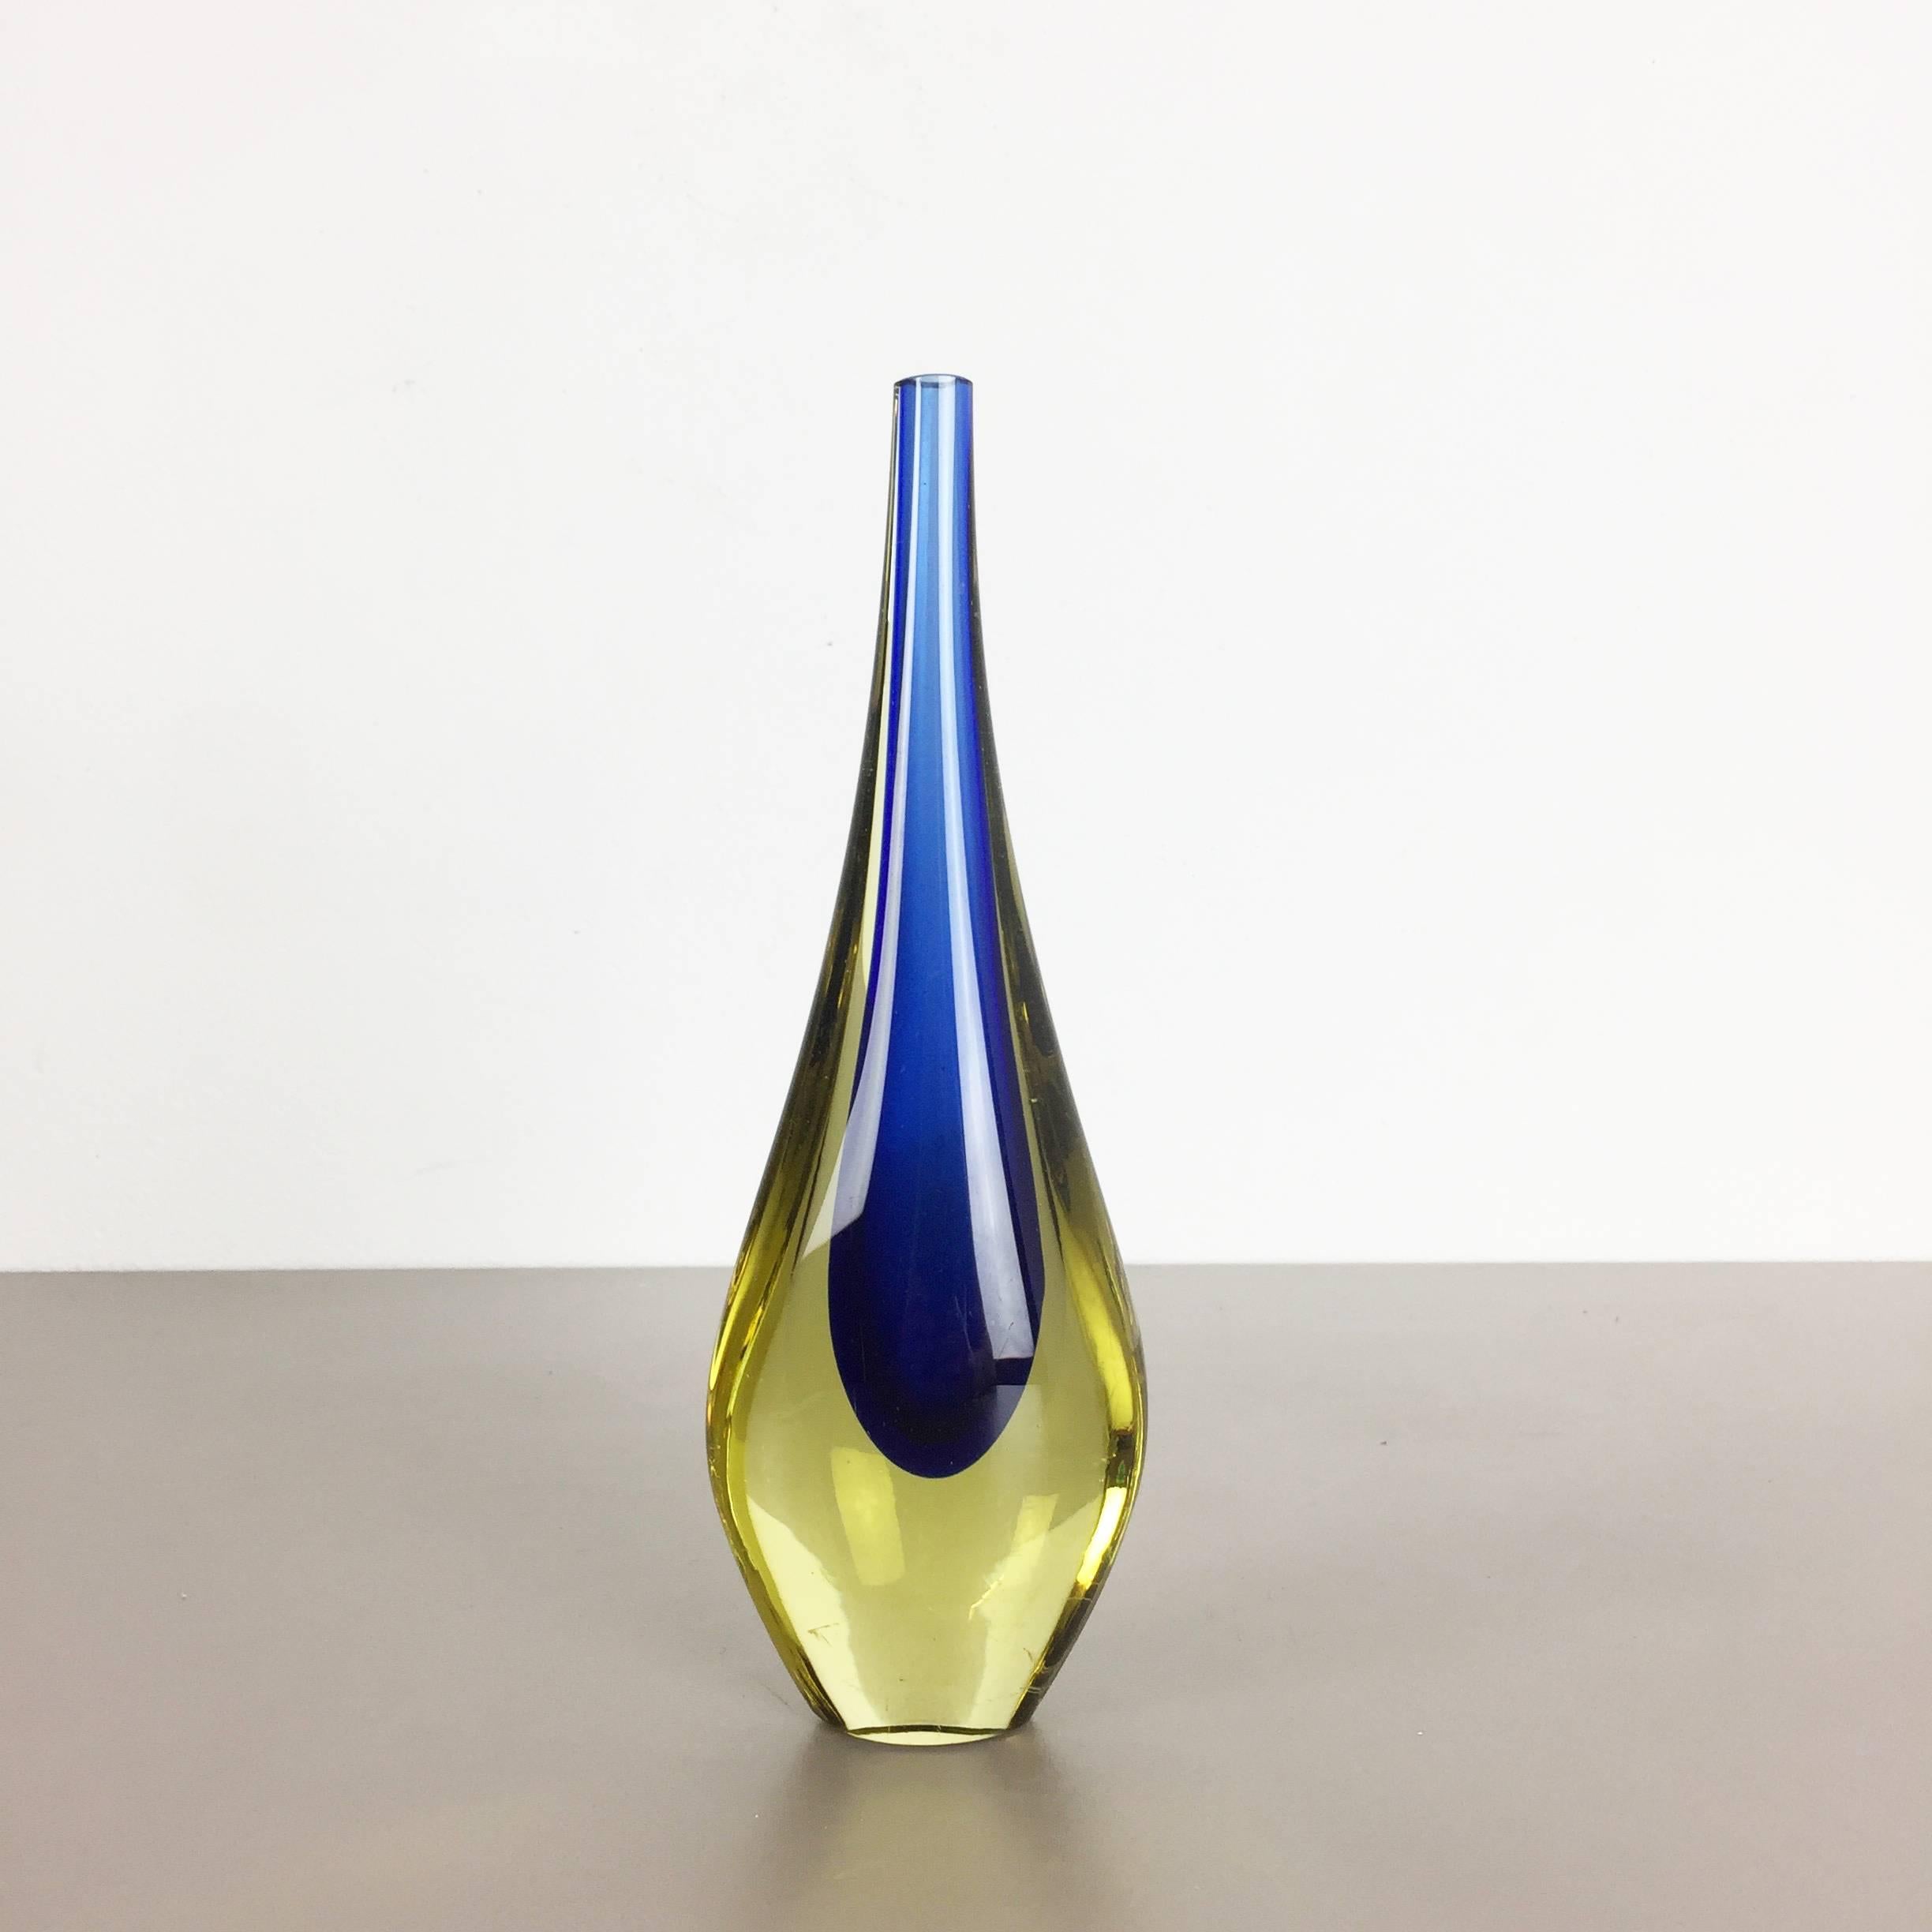 Artikel:

Vase aus Murano-Glas

Design/One:

Flavio Poli


Herkunft:

Murano, Italien


Jahrzehnt:

1970s

Diese original Murano-Glasvasen wurden in den 1970er Jahren in Italien hergestellt. Diese elegante italienische Vase,